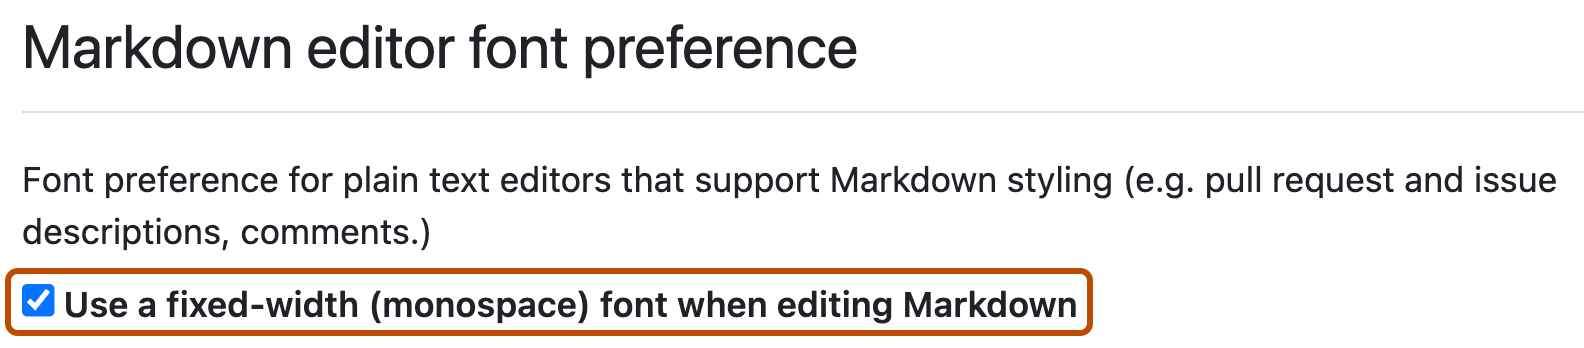 Capture d'écran des paramètres utilisateur GitHub pour la préférence de Markdown. La case à cocher permettant d'utiliser une police à largeur fixe dans le Markdown est cochée et tracée en orange foncé.